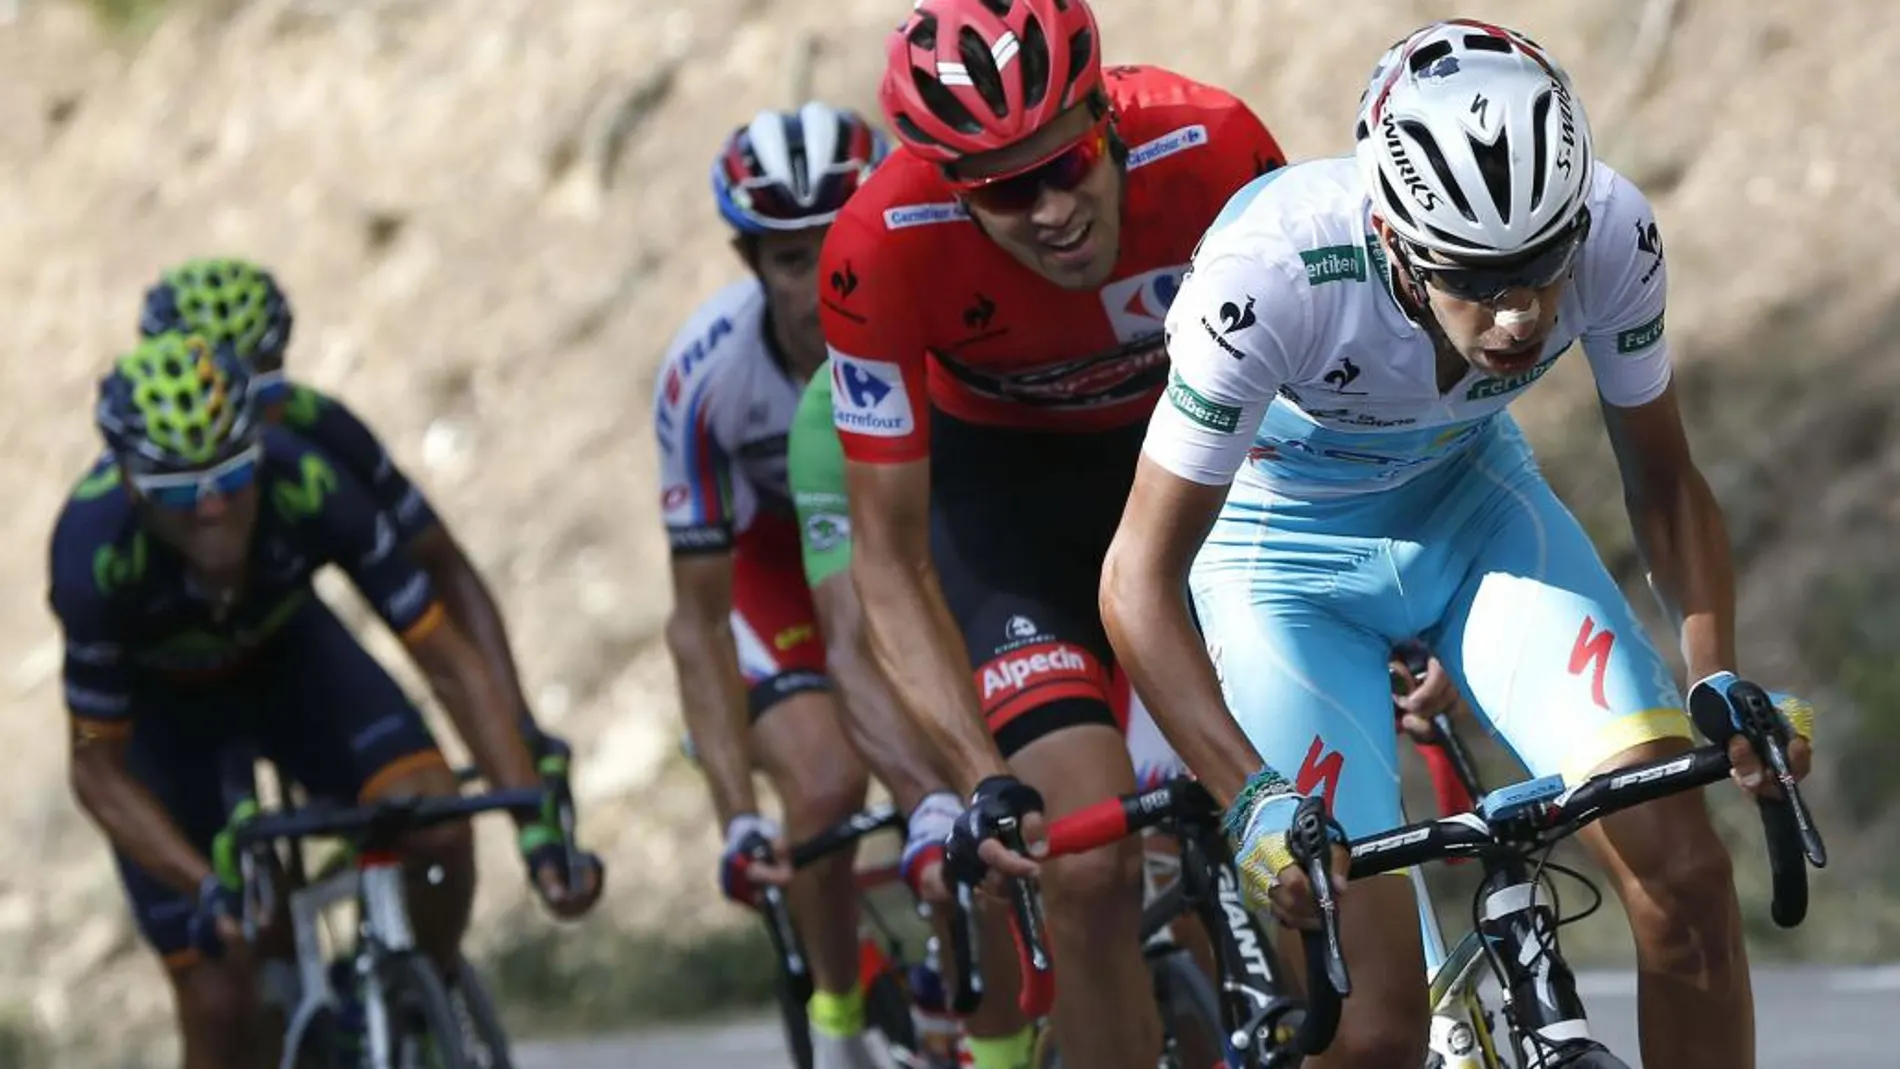 El ciclista italiano del equipo Astana, Fabio Aru, seguido por el holandés del equipo Giant, Tom Dumoulin, líder de la clasificación provisional, durante la decimoctava etapa de la Vuelta Ciclista a España